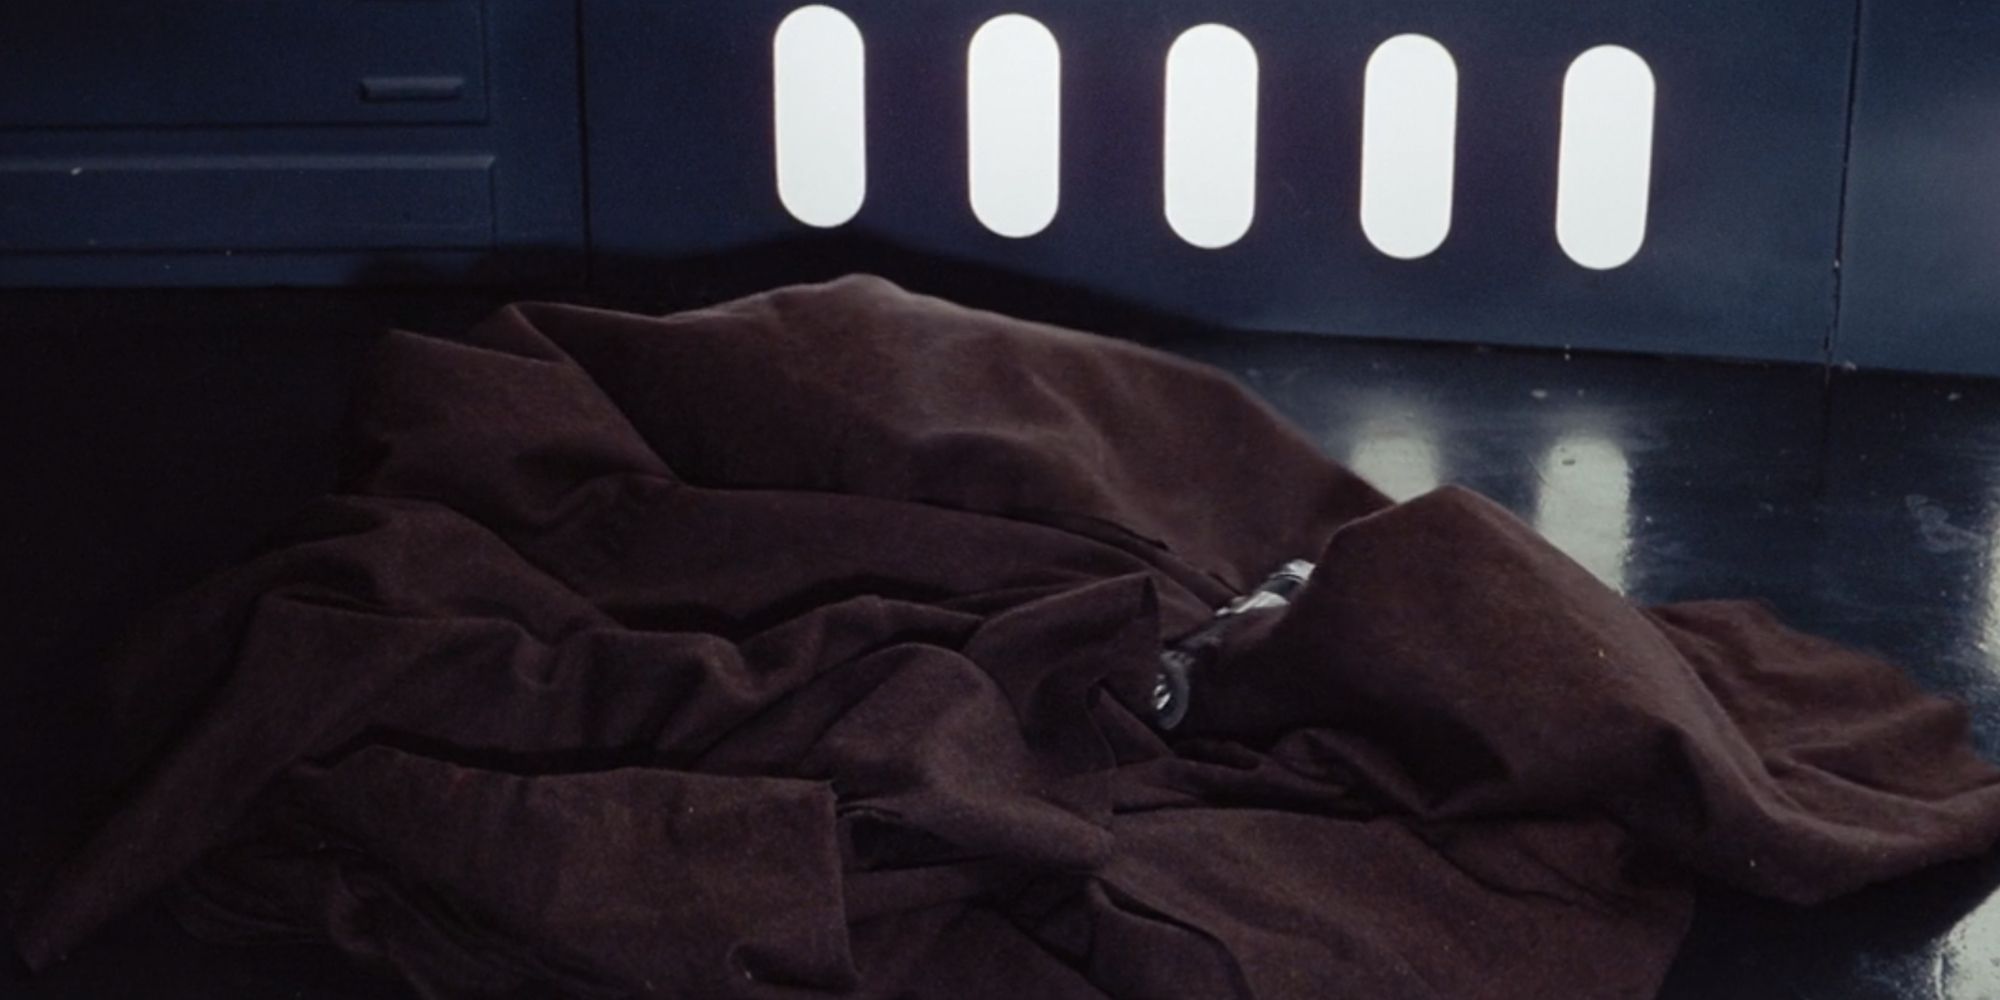 Obi-Wan Kenobi's lightsaber and robe in A New Hope